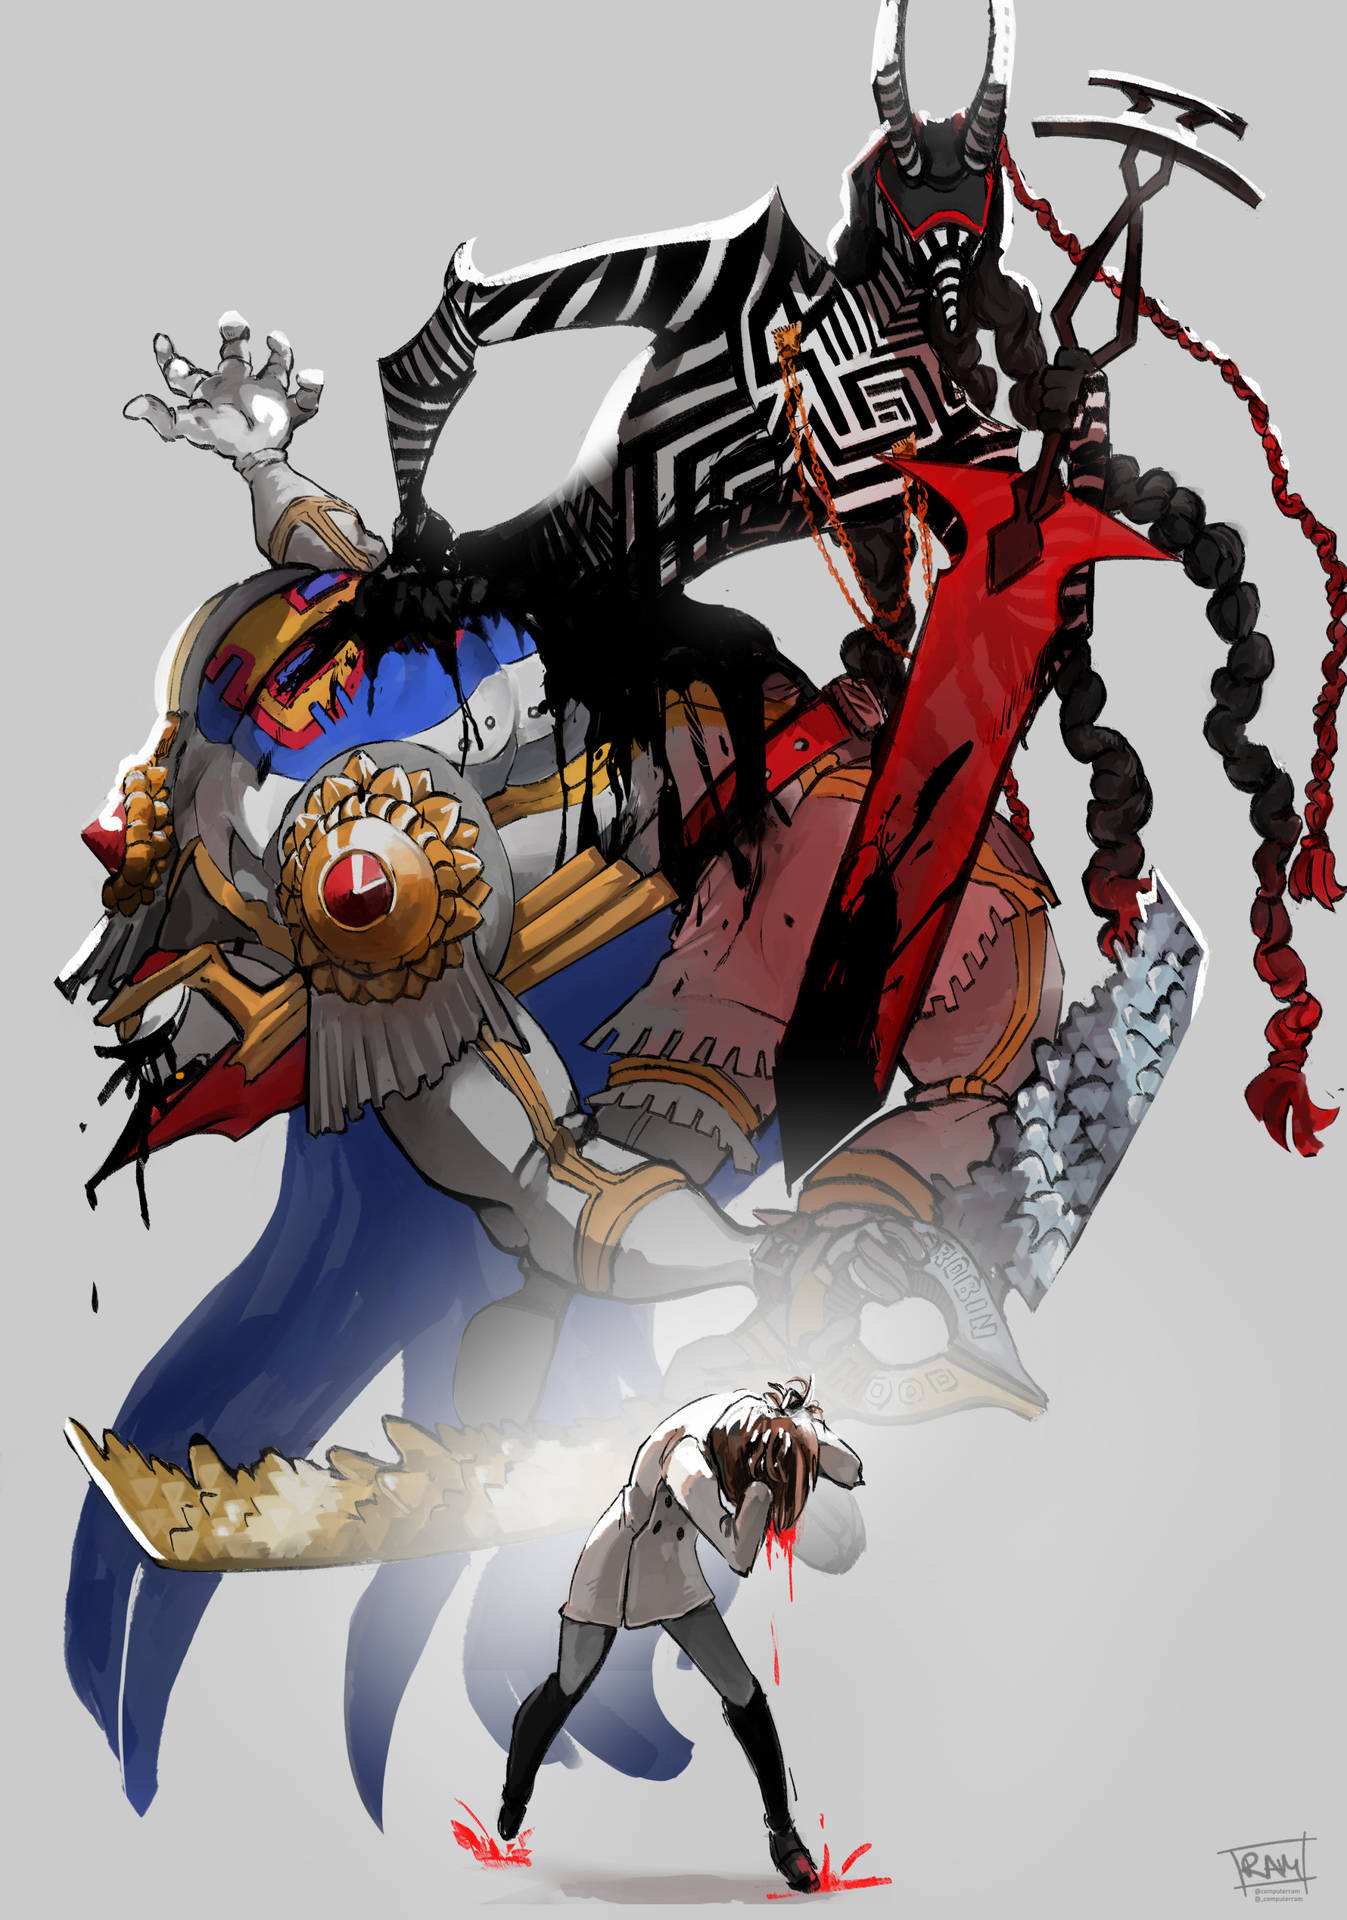 Persona 5 Royal Striped Creature Picture